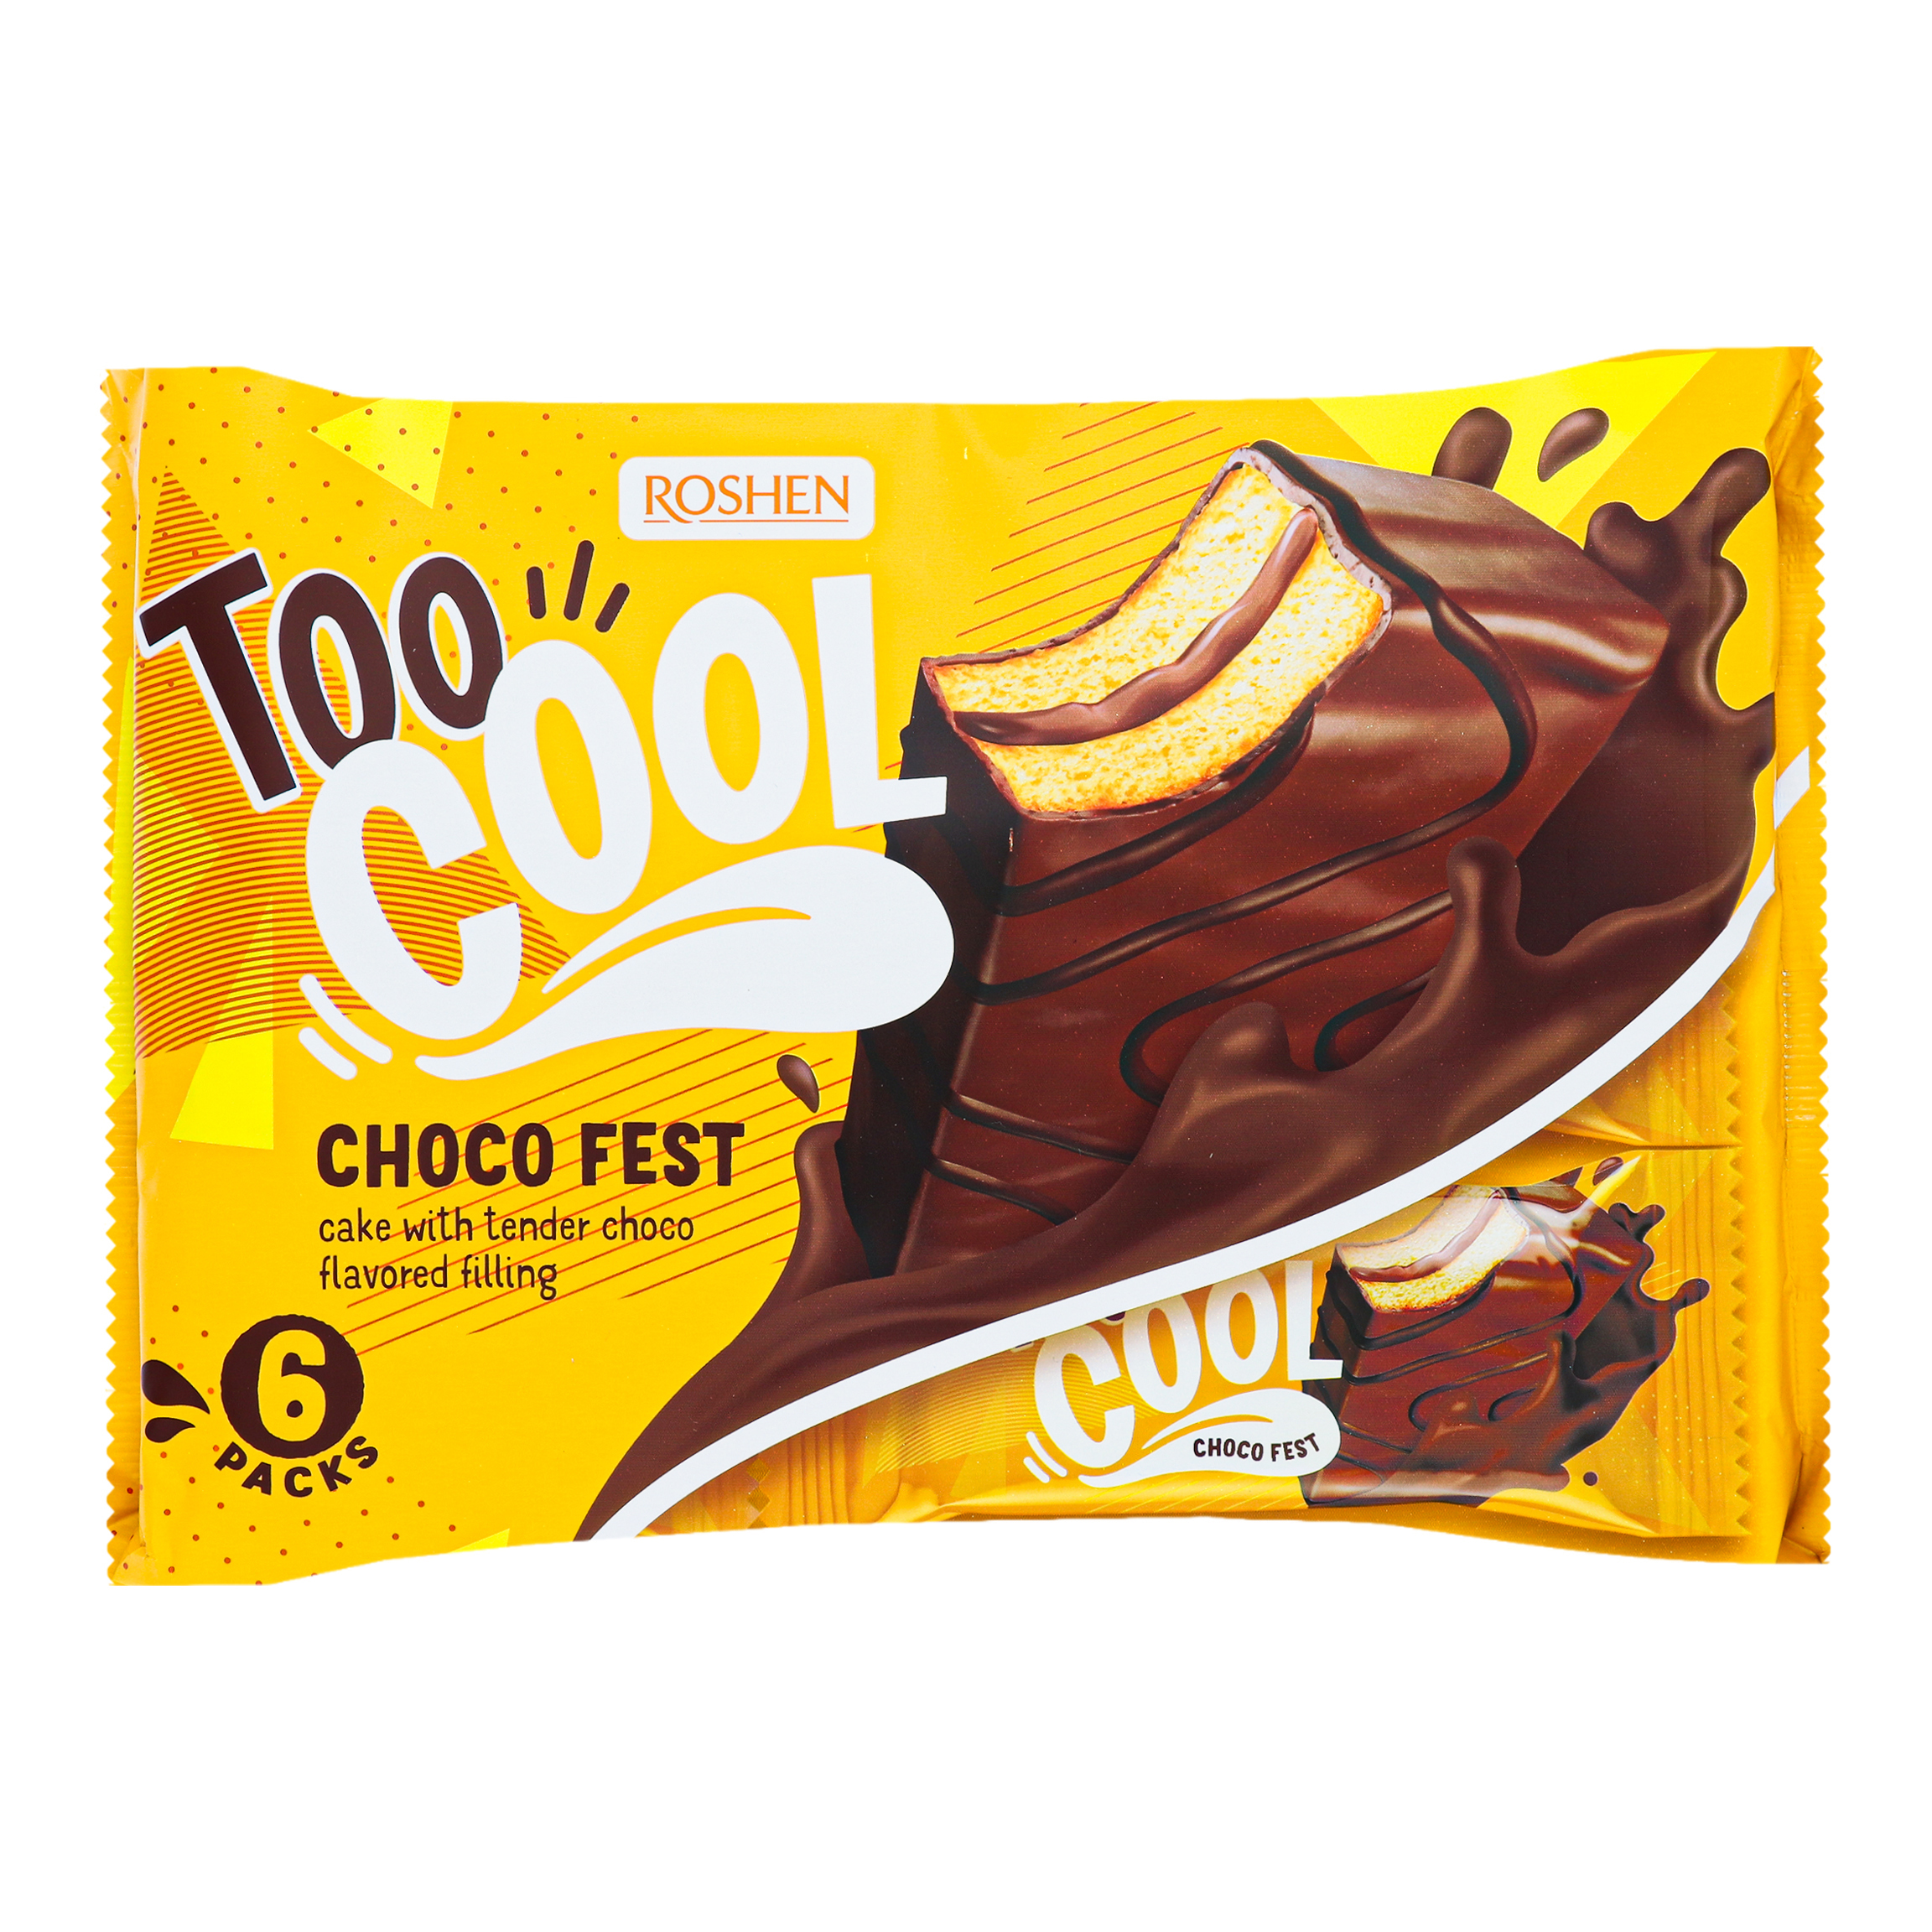 Тістечко Roshen Too Cool Choco Fest бісквітне з шоколадною начинкою 270г